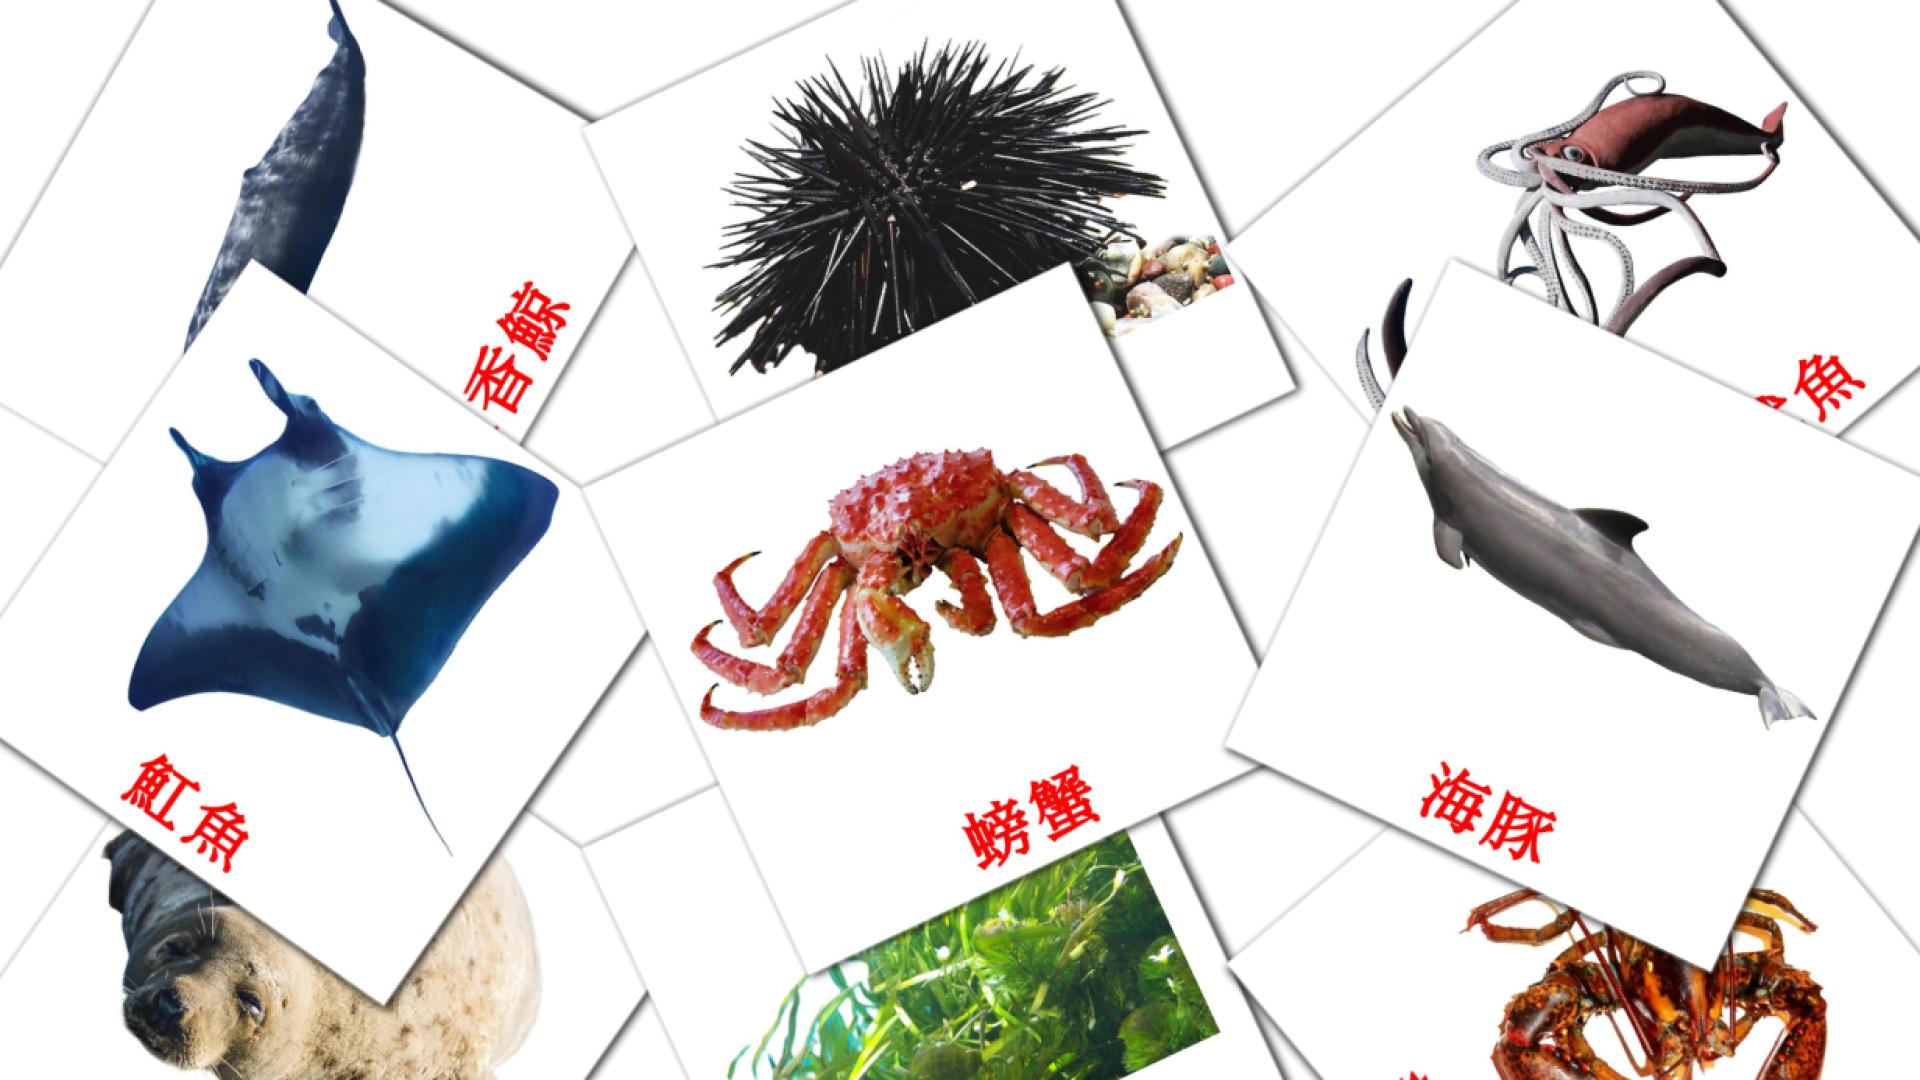 29 海洋動物 flashcards